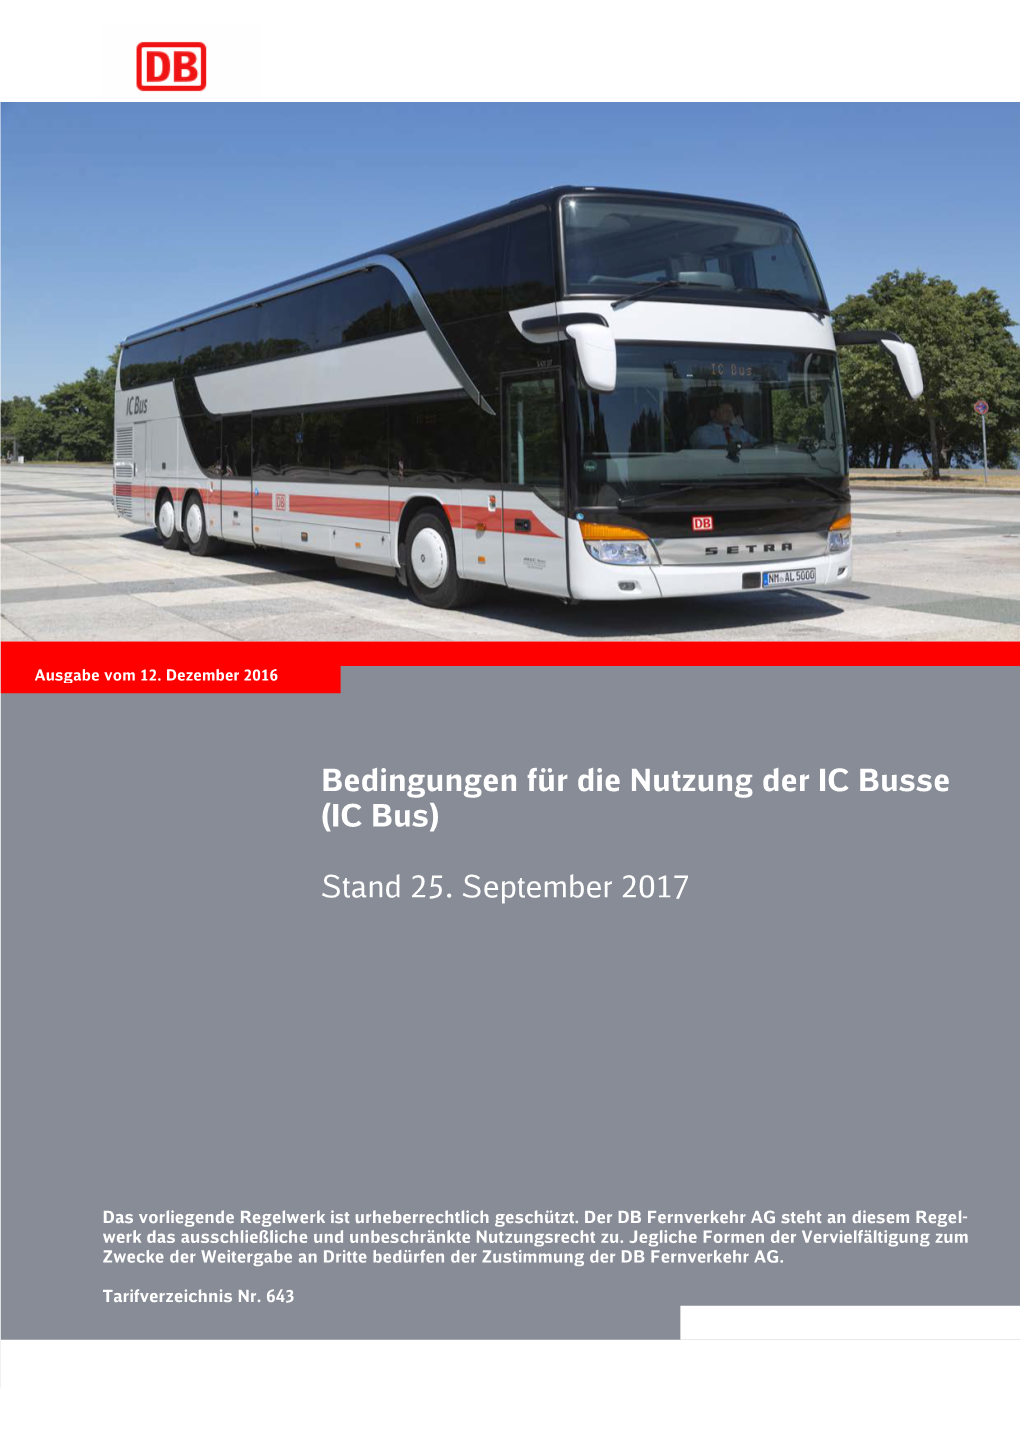 Bedingungen Für Die Nutzung Der IC Busse (IC Bus) Stand 25. September 2017